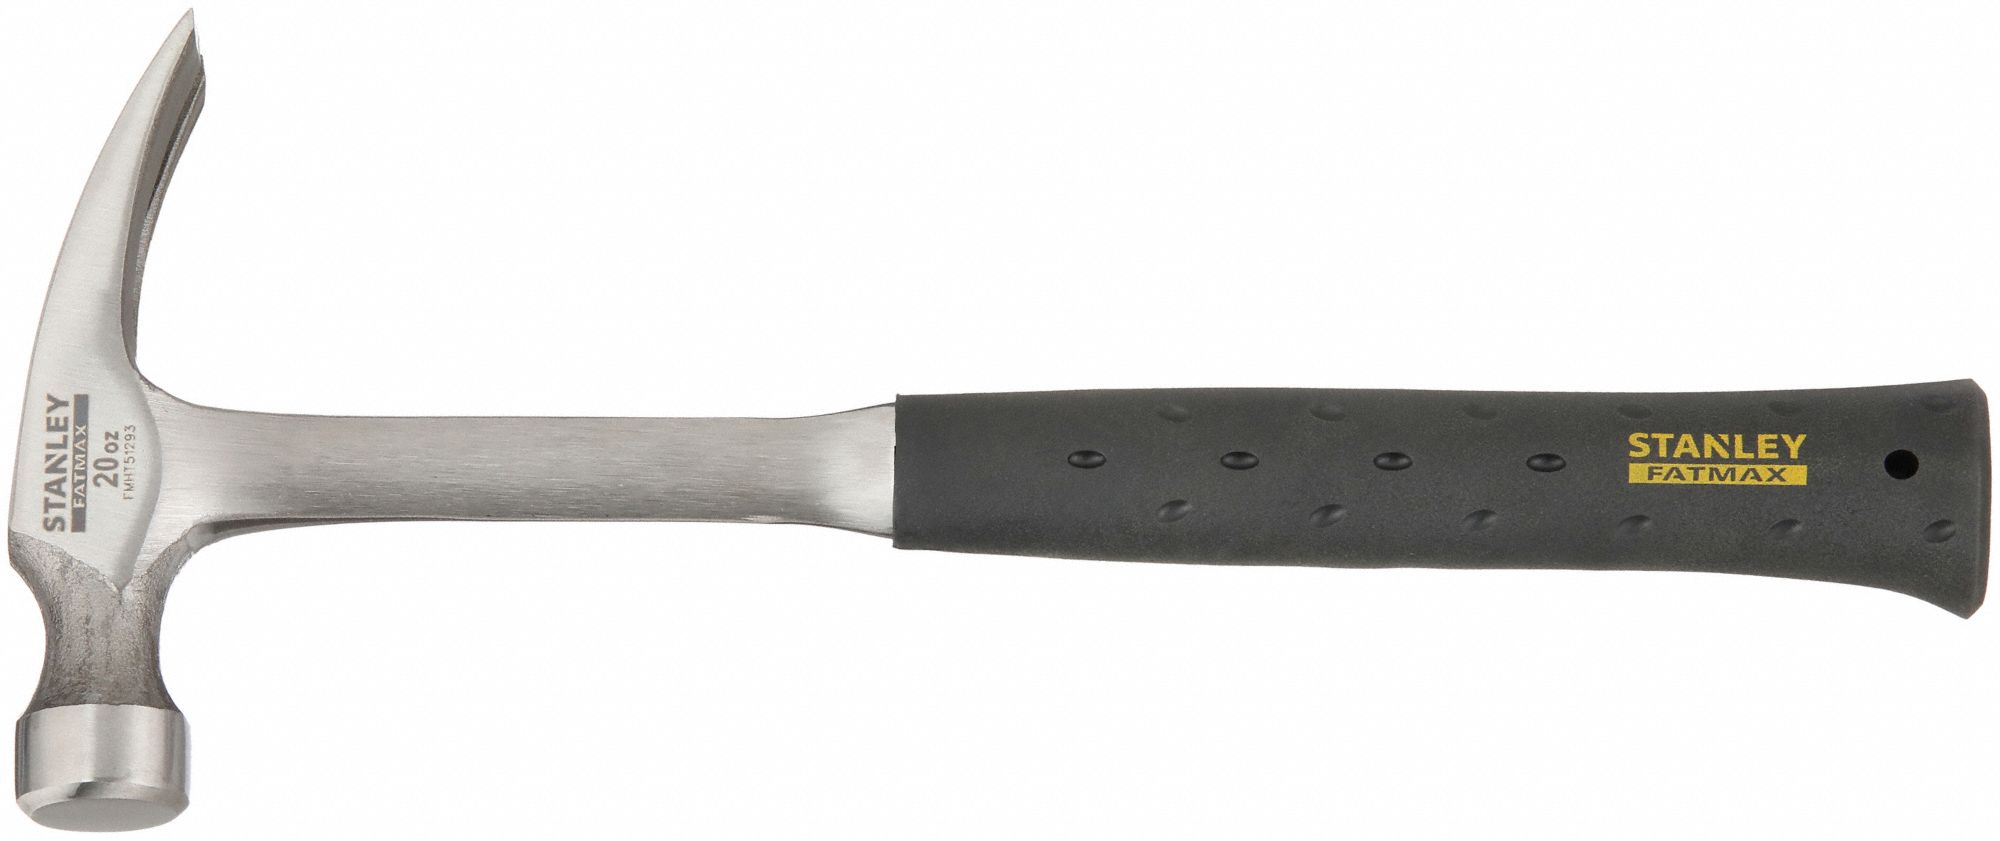 Steel, Textured Grip, Straight Claw Hammer 49XH53|FMHT51293 Grainger